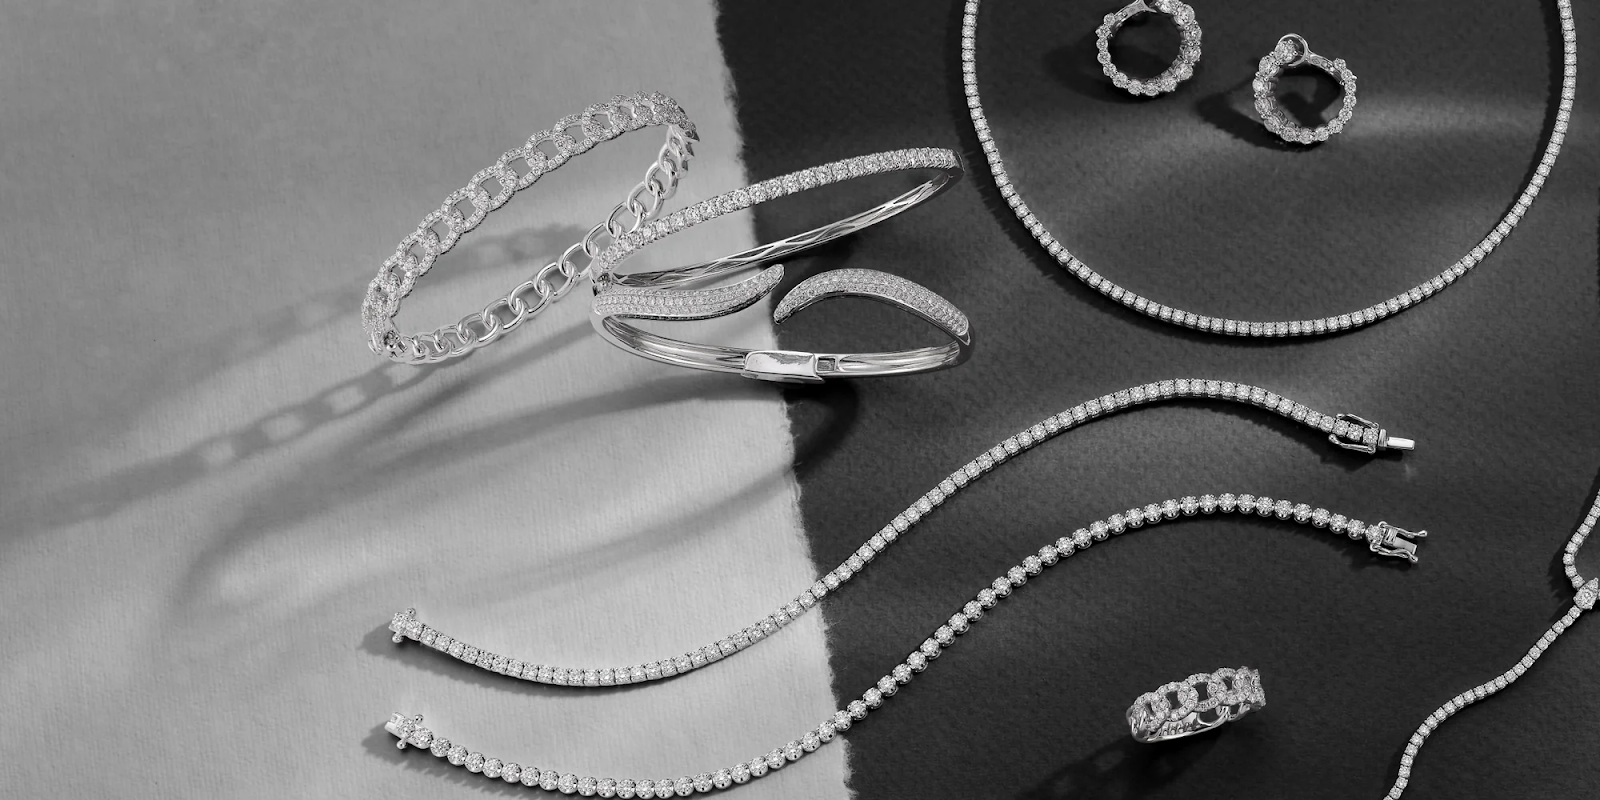  تصویری از گردنبند، دو دستبند، یک جفت گوشواره، یک انگشتر و سه النگو